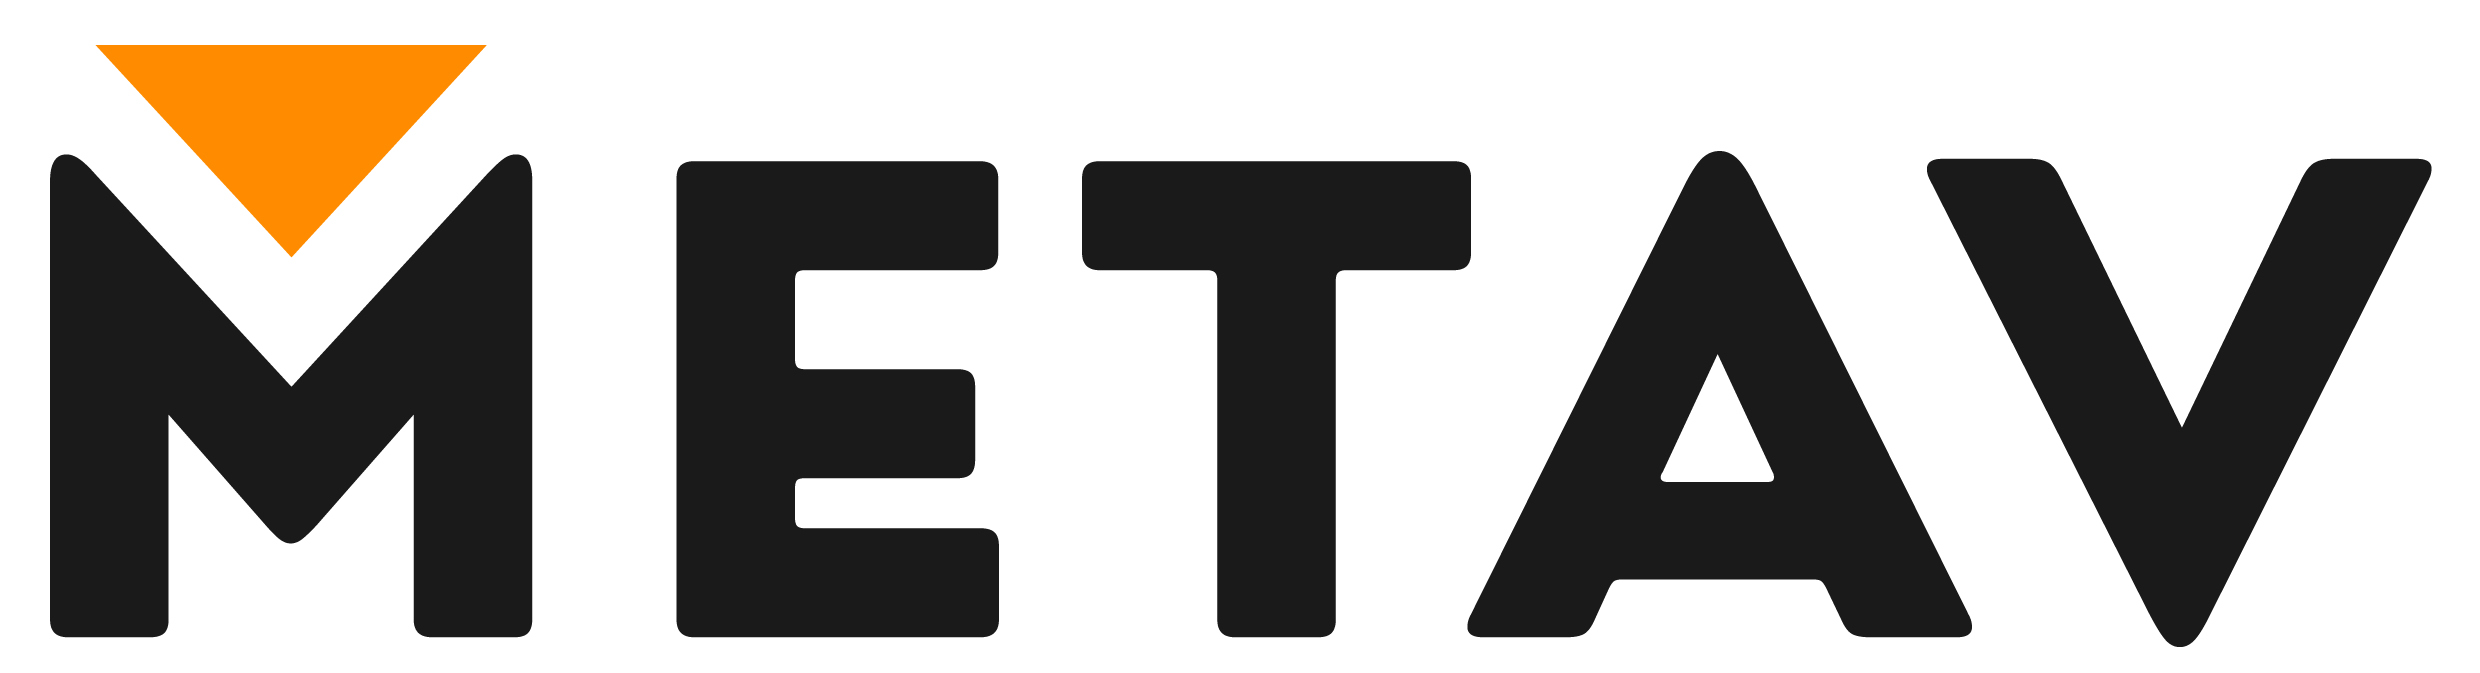 Logo von Metav. Schwarze Schrift auf weißem Hintergrund.